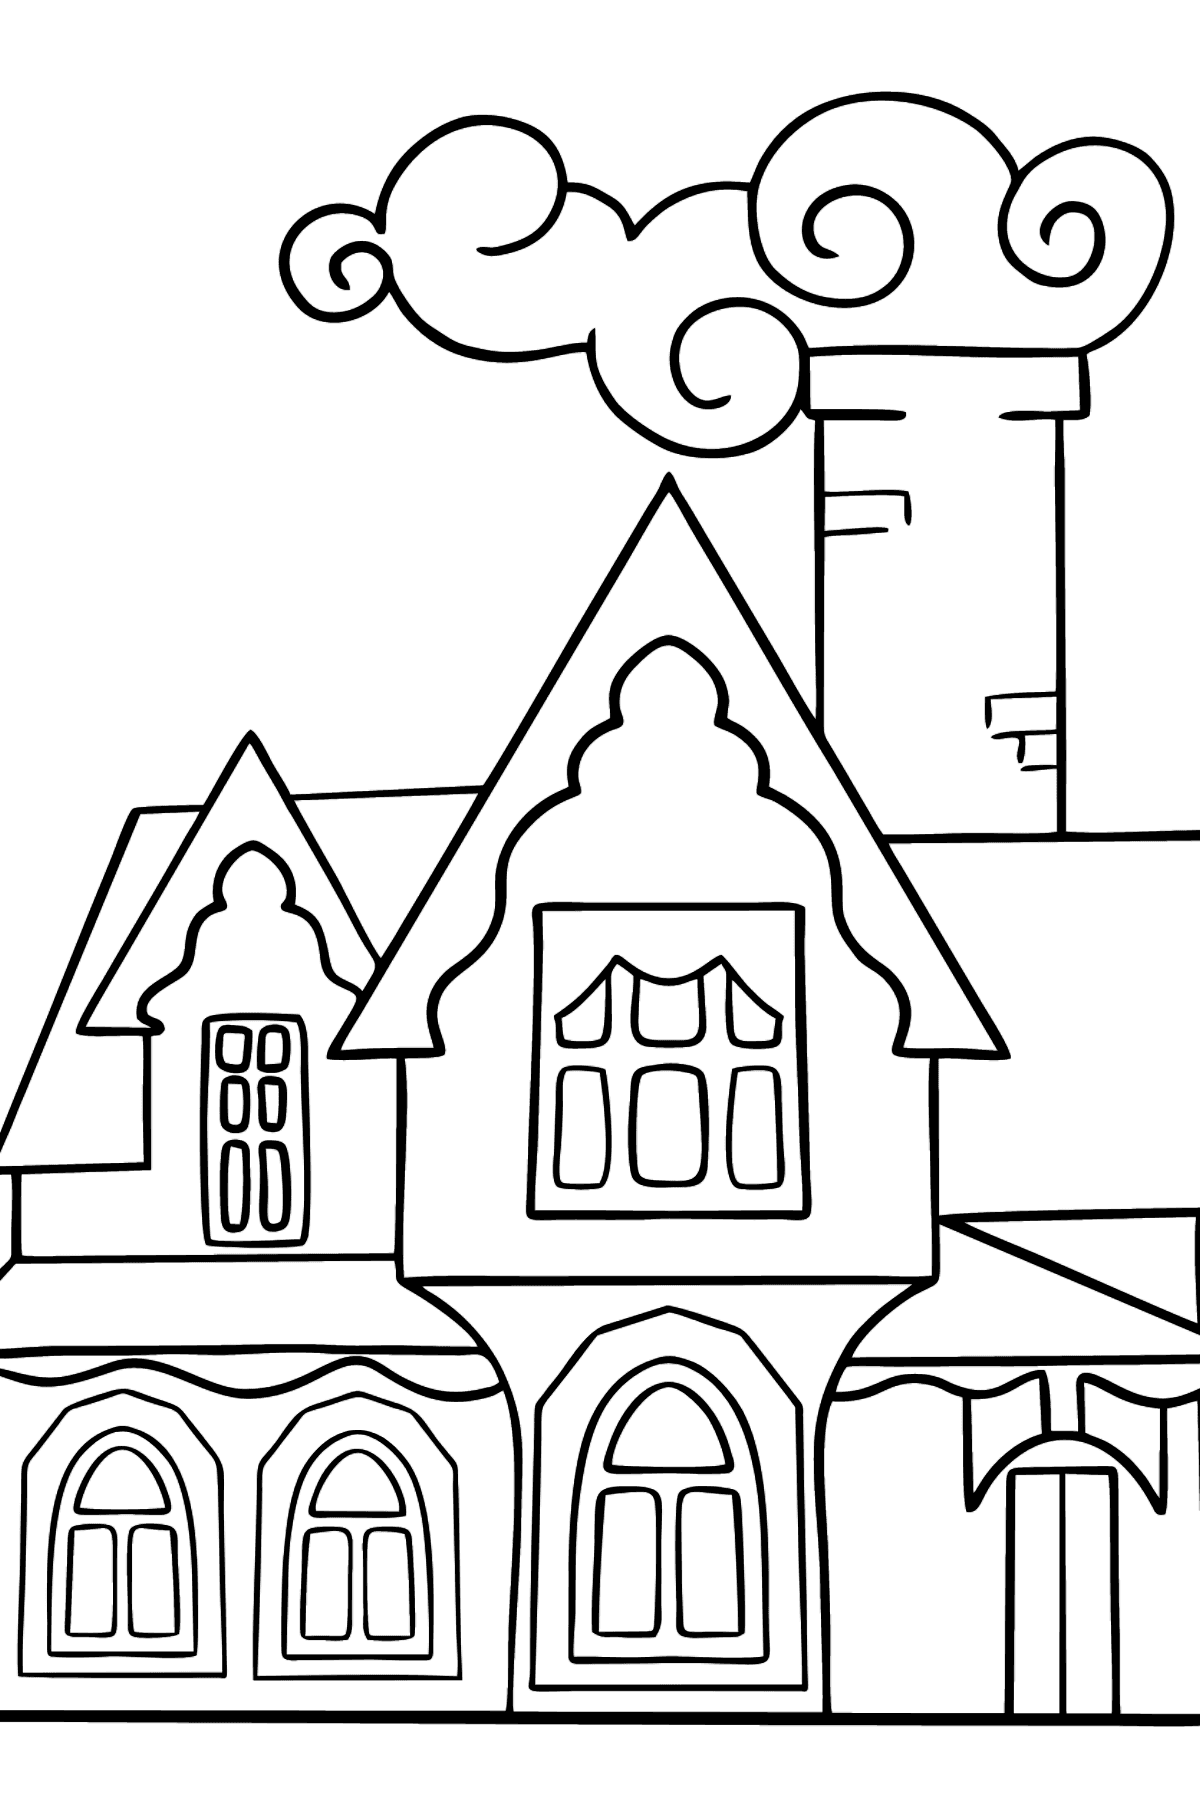 Boyama sayfası mucizevi ev (kolay) - Boyamalar çocuklar için